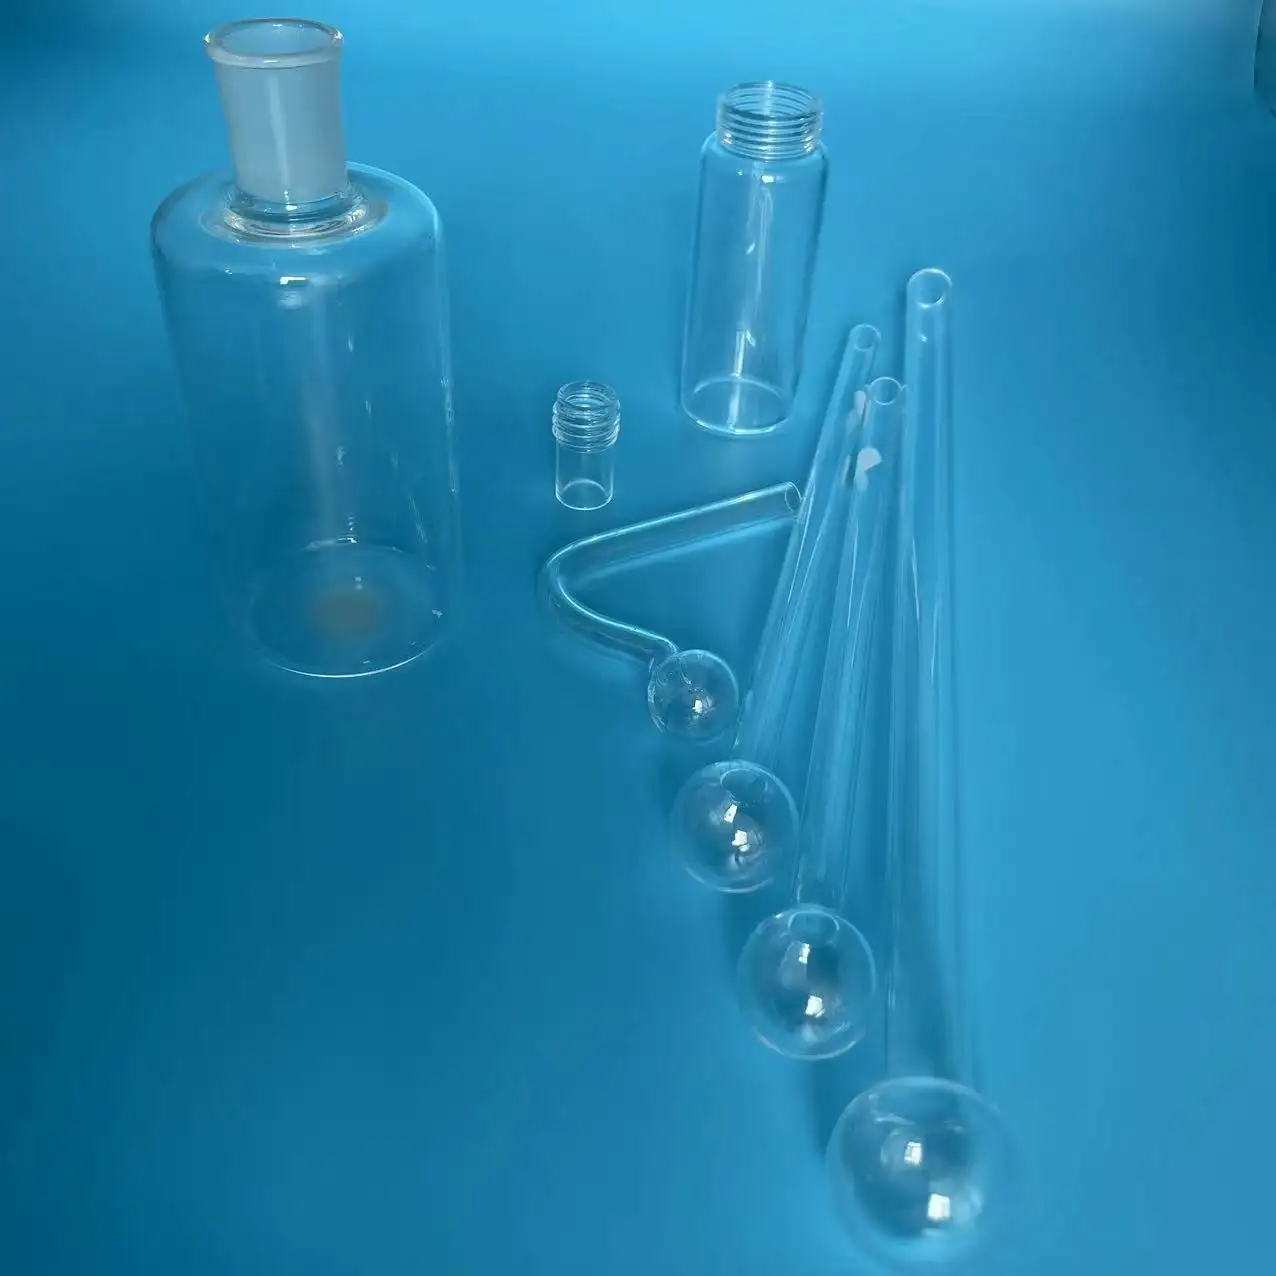 زجاجة من الكوارتز ذات خرطوم أوروبي أنبوب زجاجي للاختبارات المختبرية من نهاية كروية شفافة بسعر الجهة المصنعة